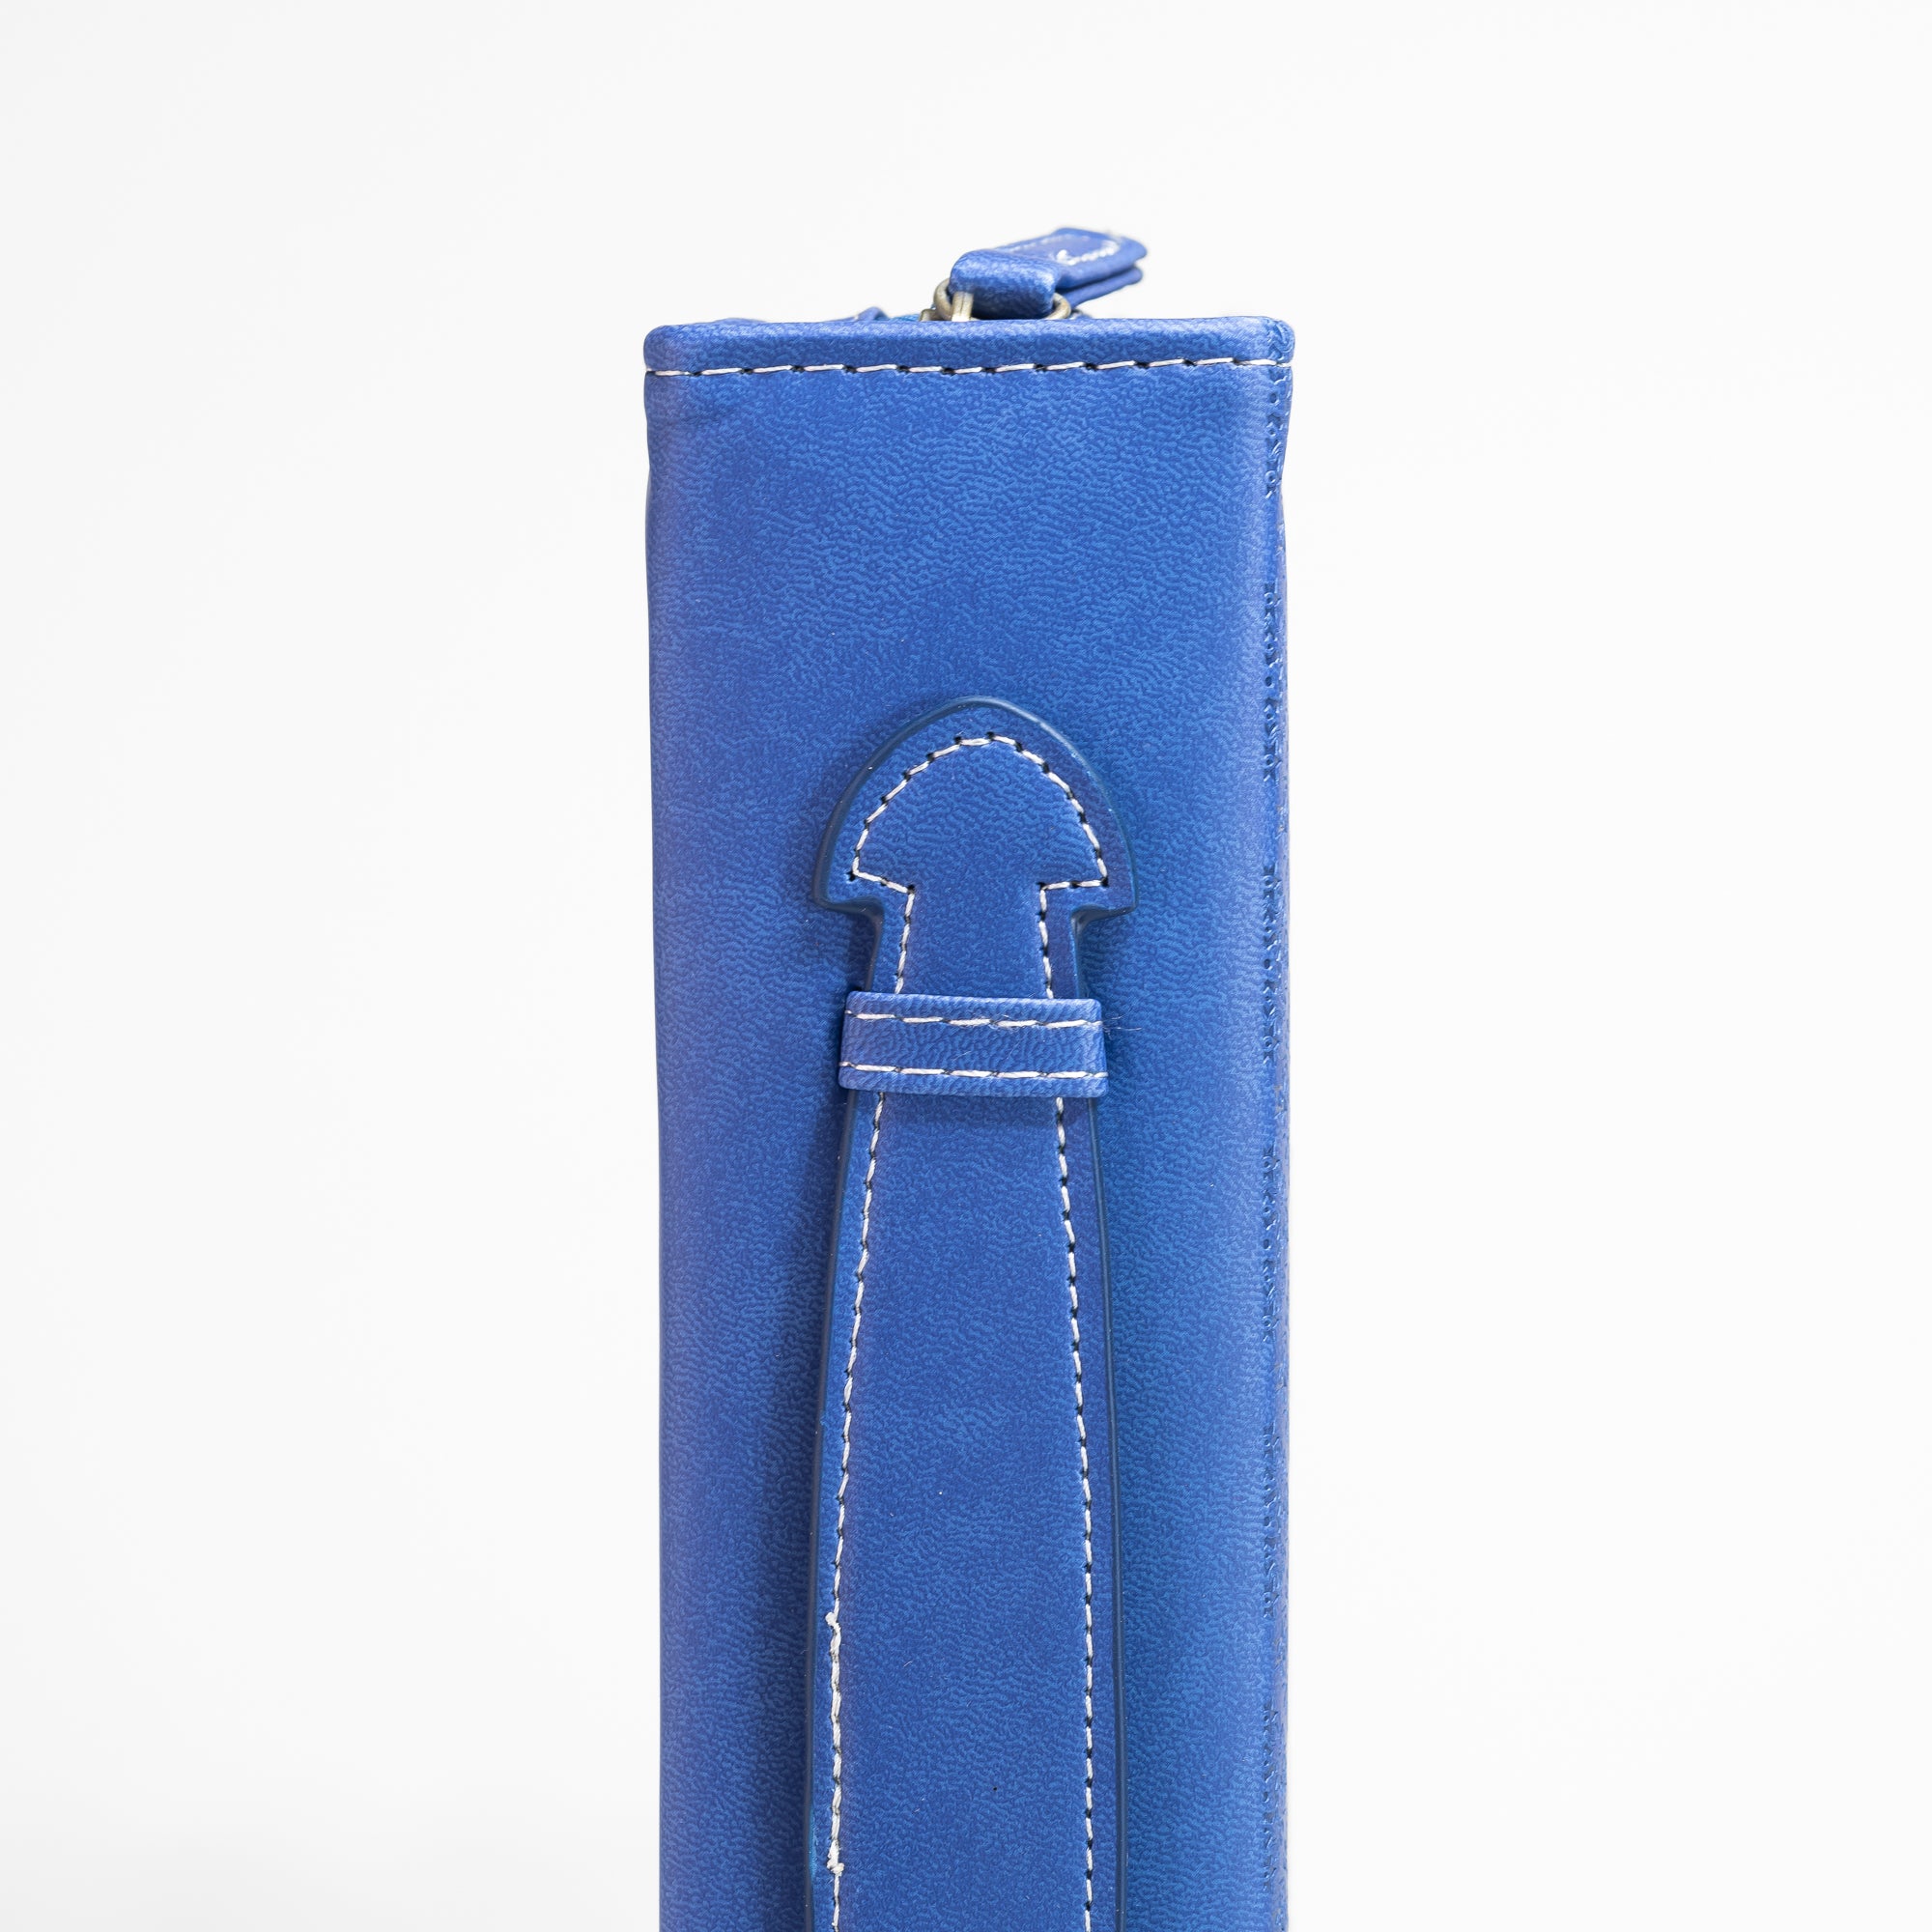 Divine Details: Bible Cover Blue On Blue - Wrap Patch